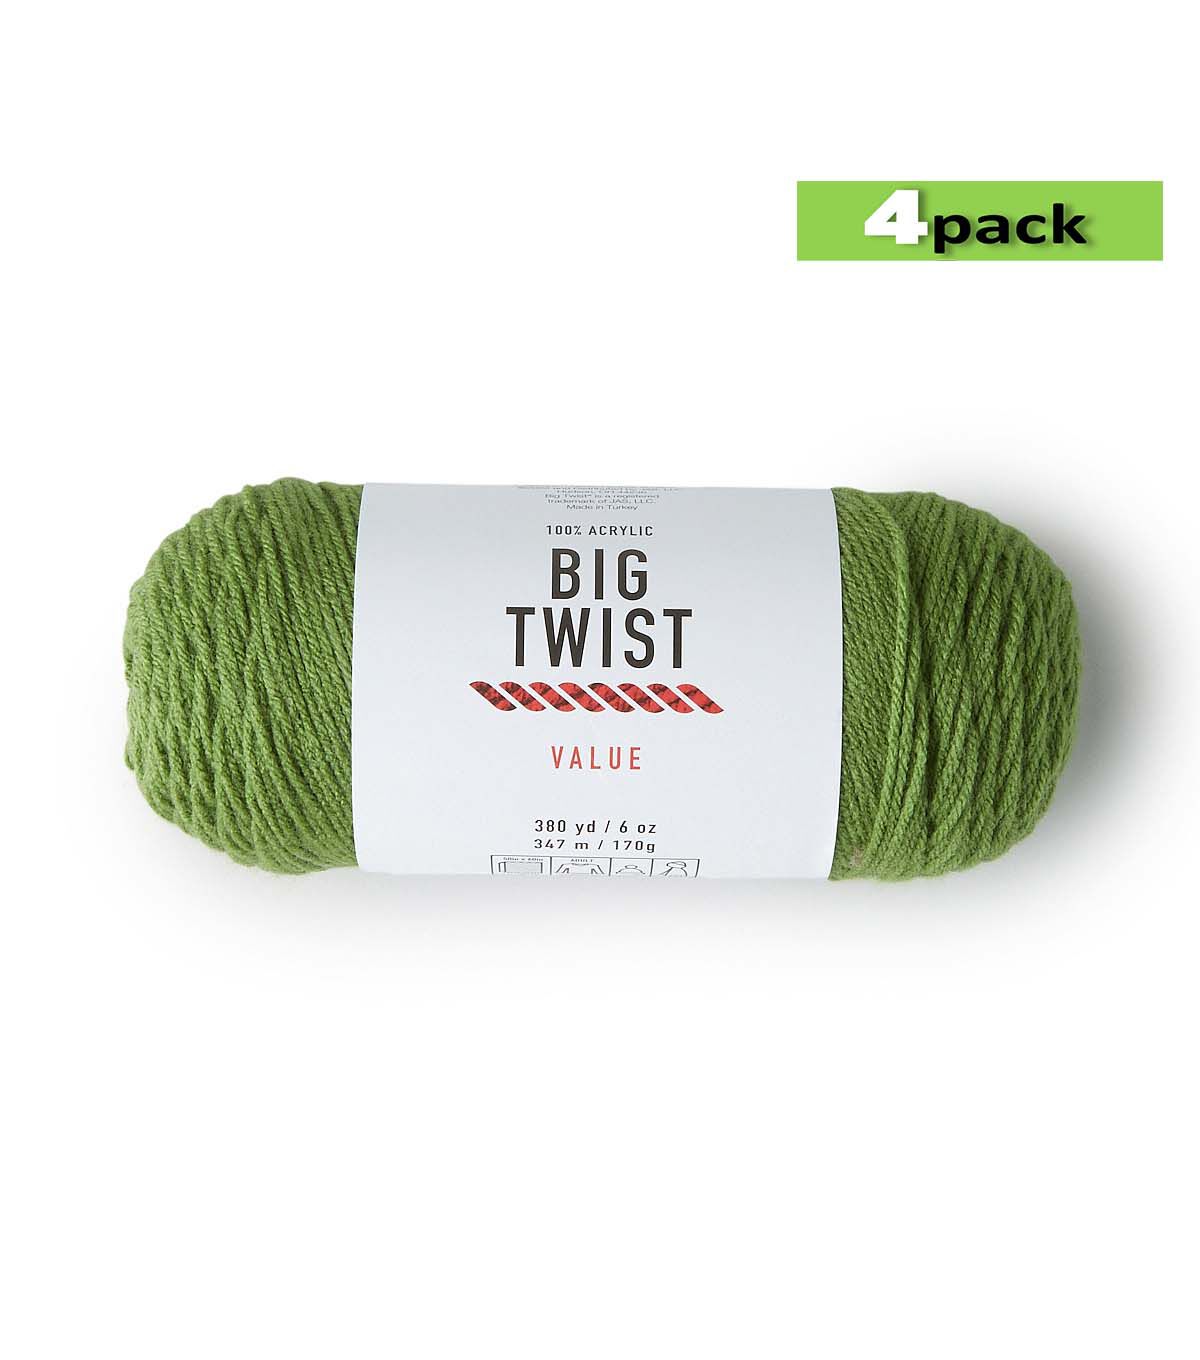 4pk Solid Green Medium Weight Acrylic 380yd Value Yarn by Big Twist